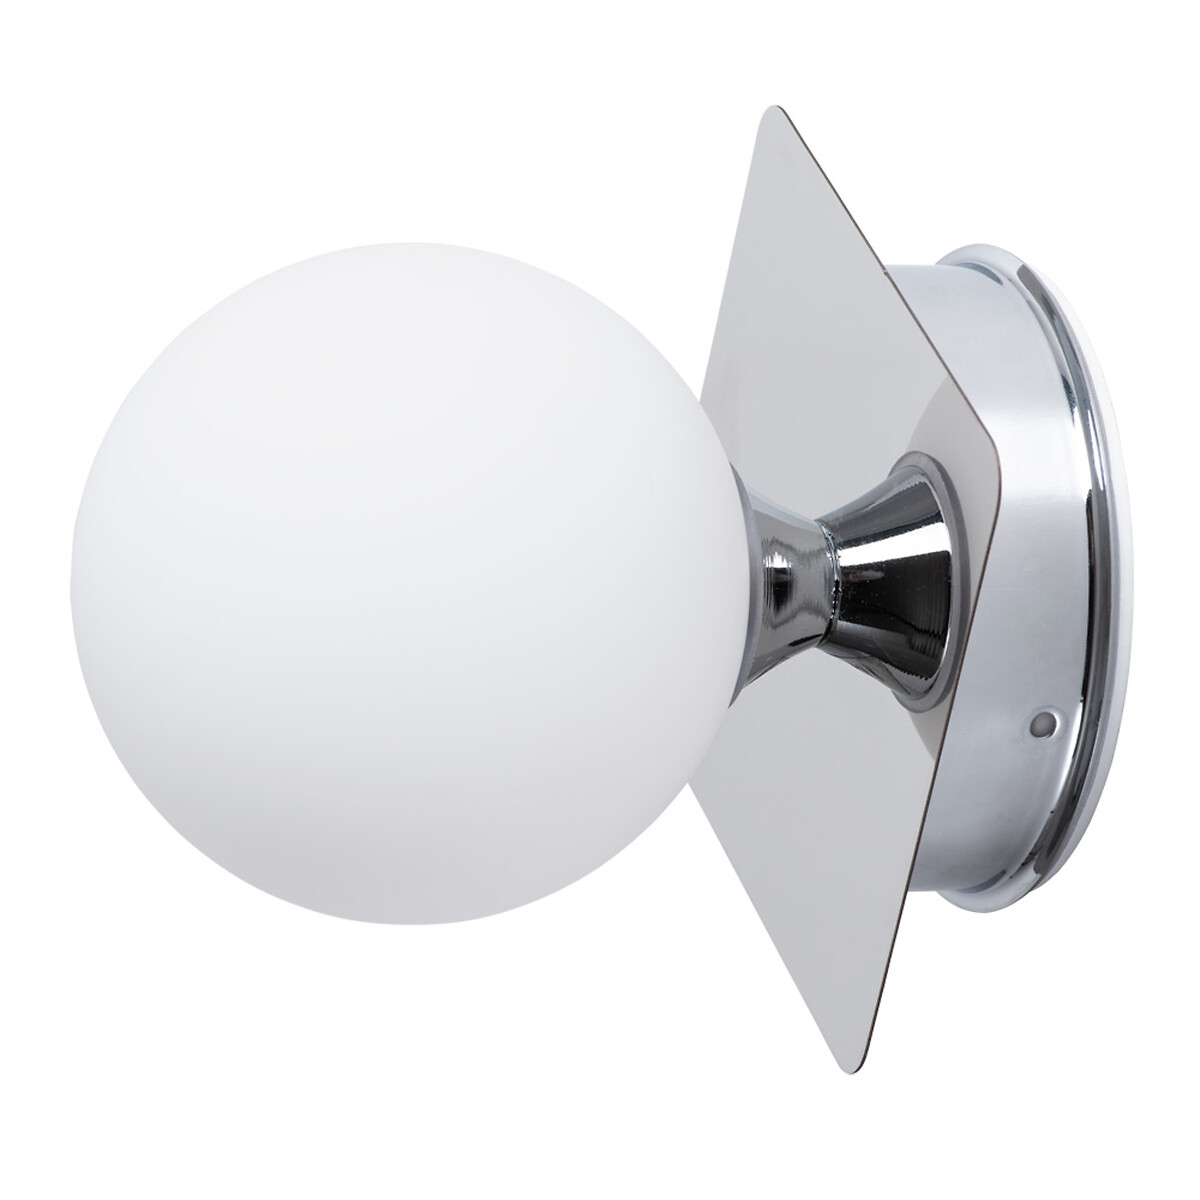 Настенный светильник AQUA-BOLLA единый размер белый настенный светильник sigaro 28вт g9 7x54x10 см